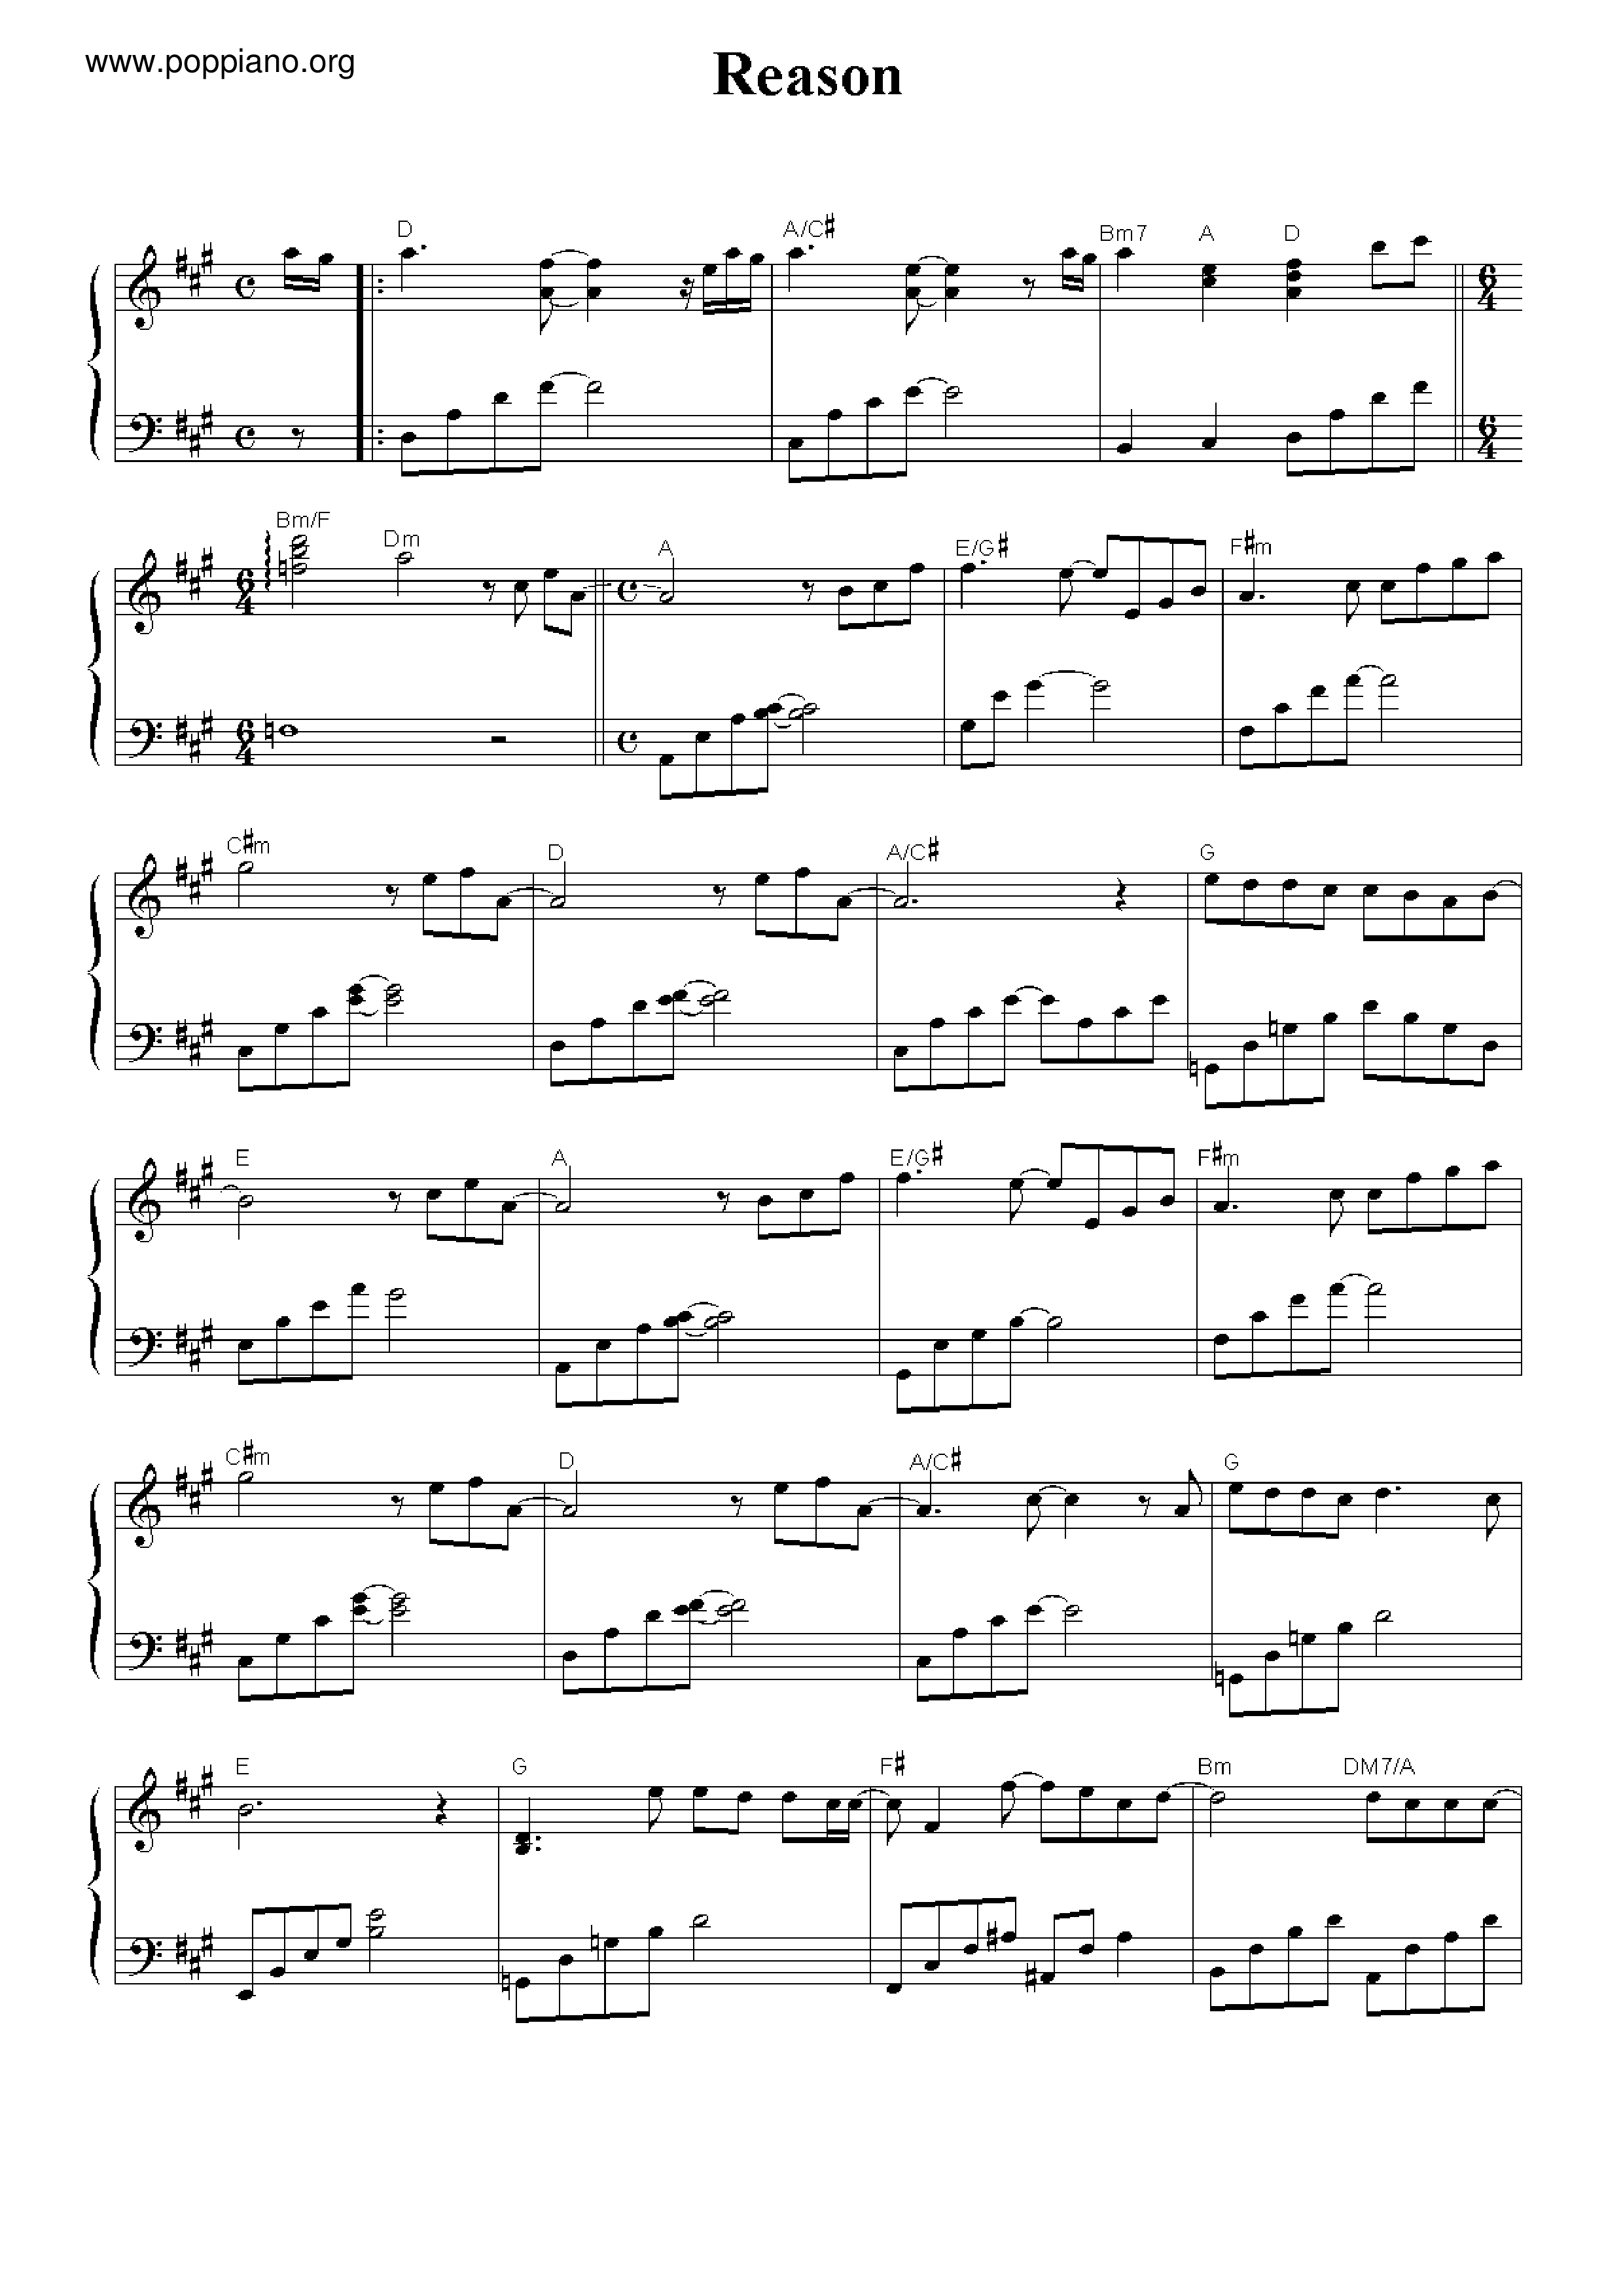 Winter Sonata - Reason Score